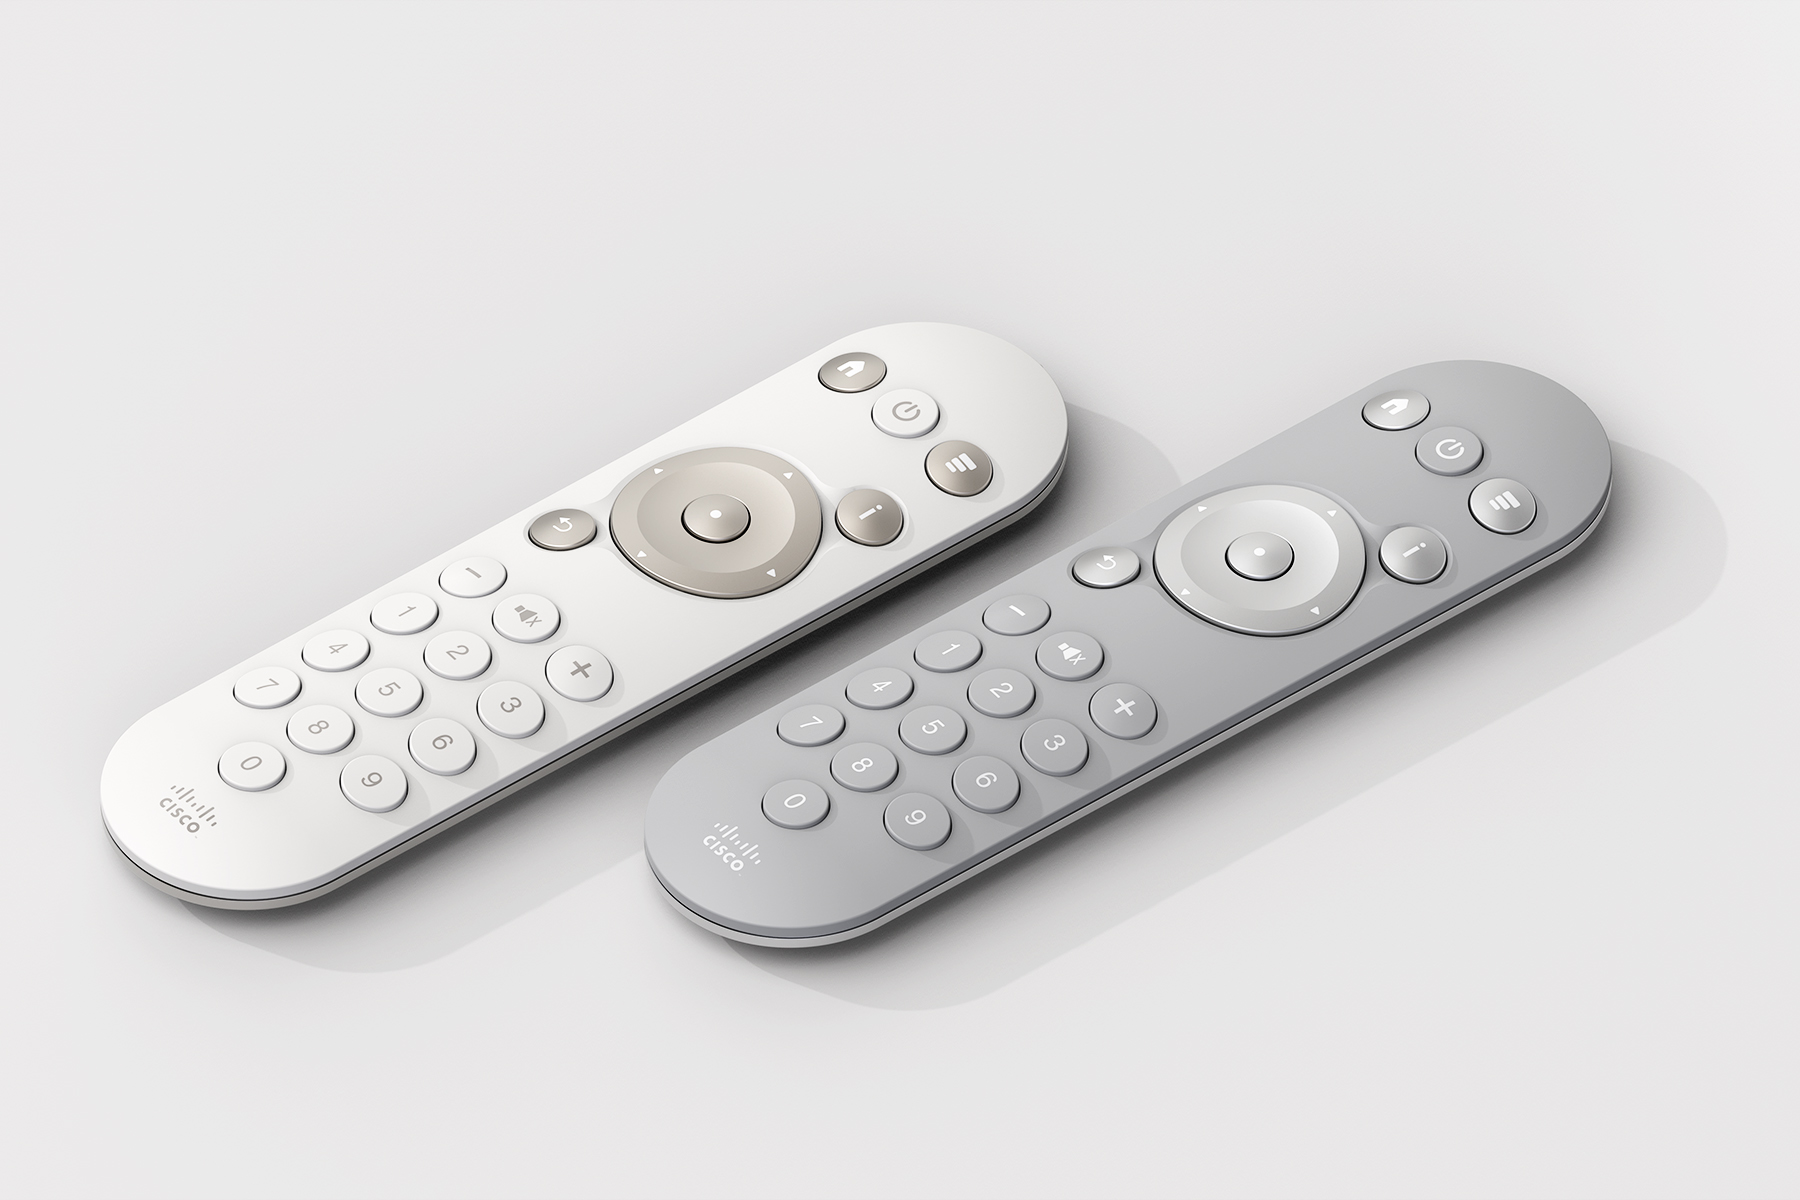 Cisco TV Remote Control Eskild Hansen Design Studio